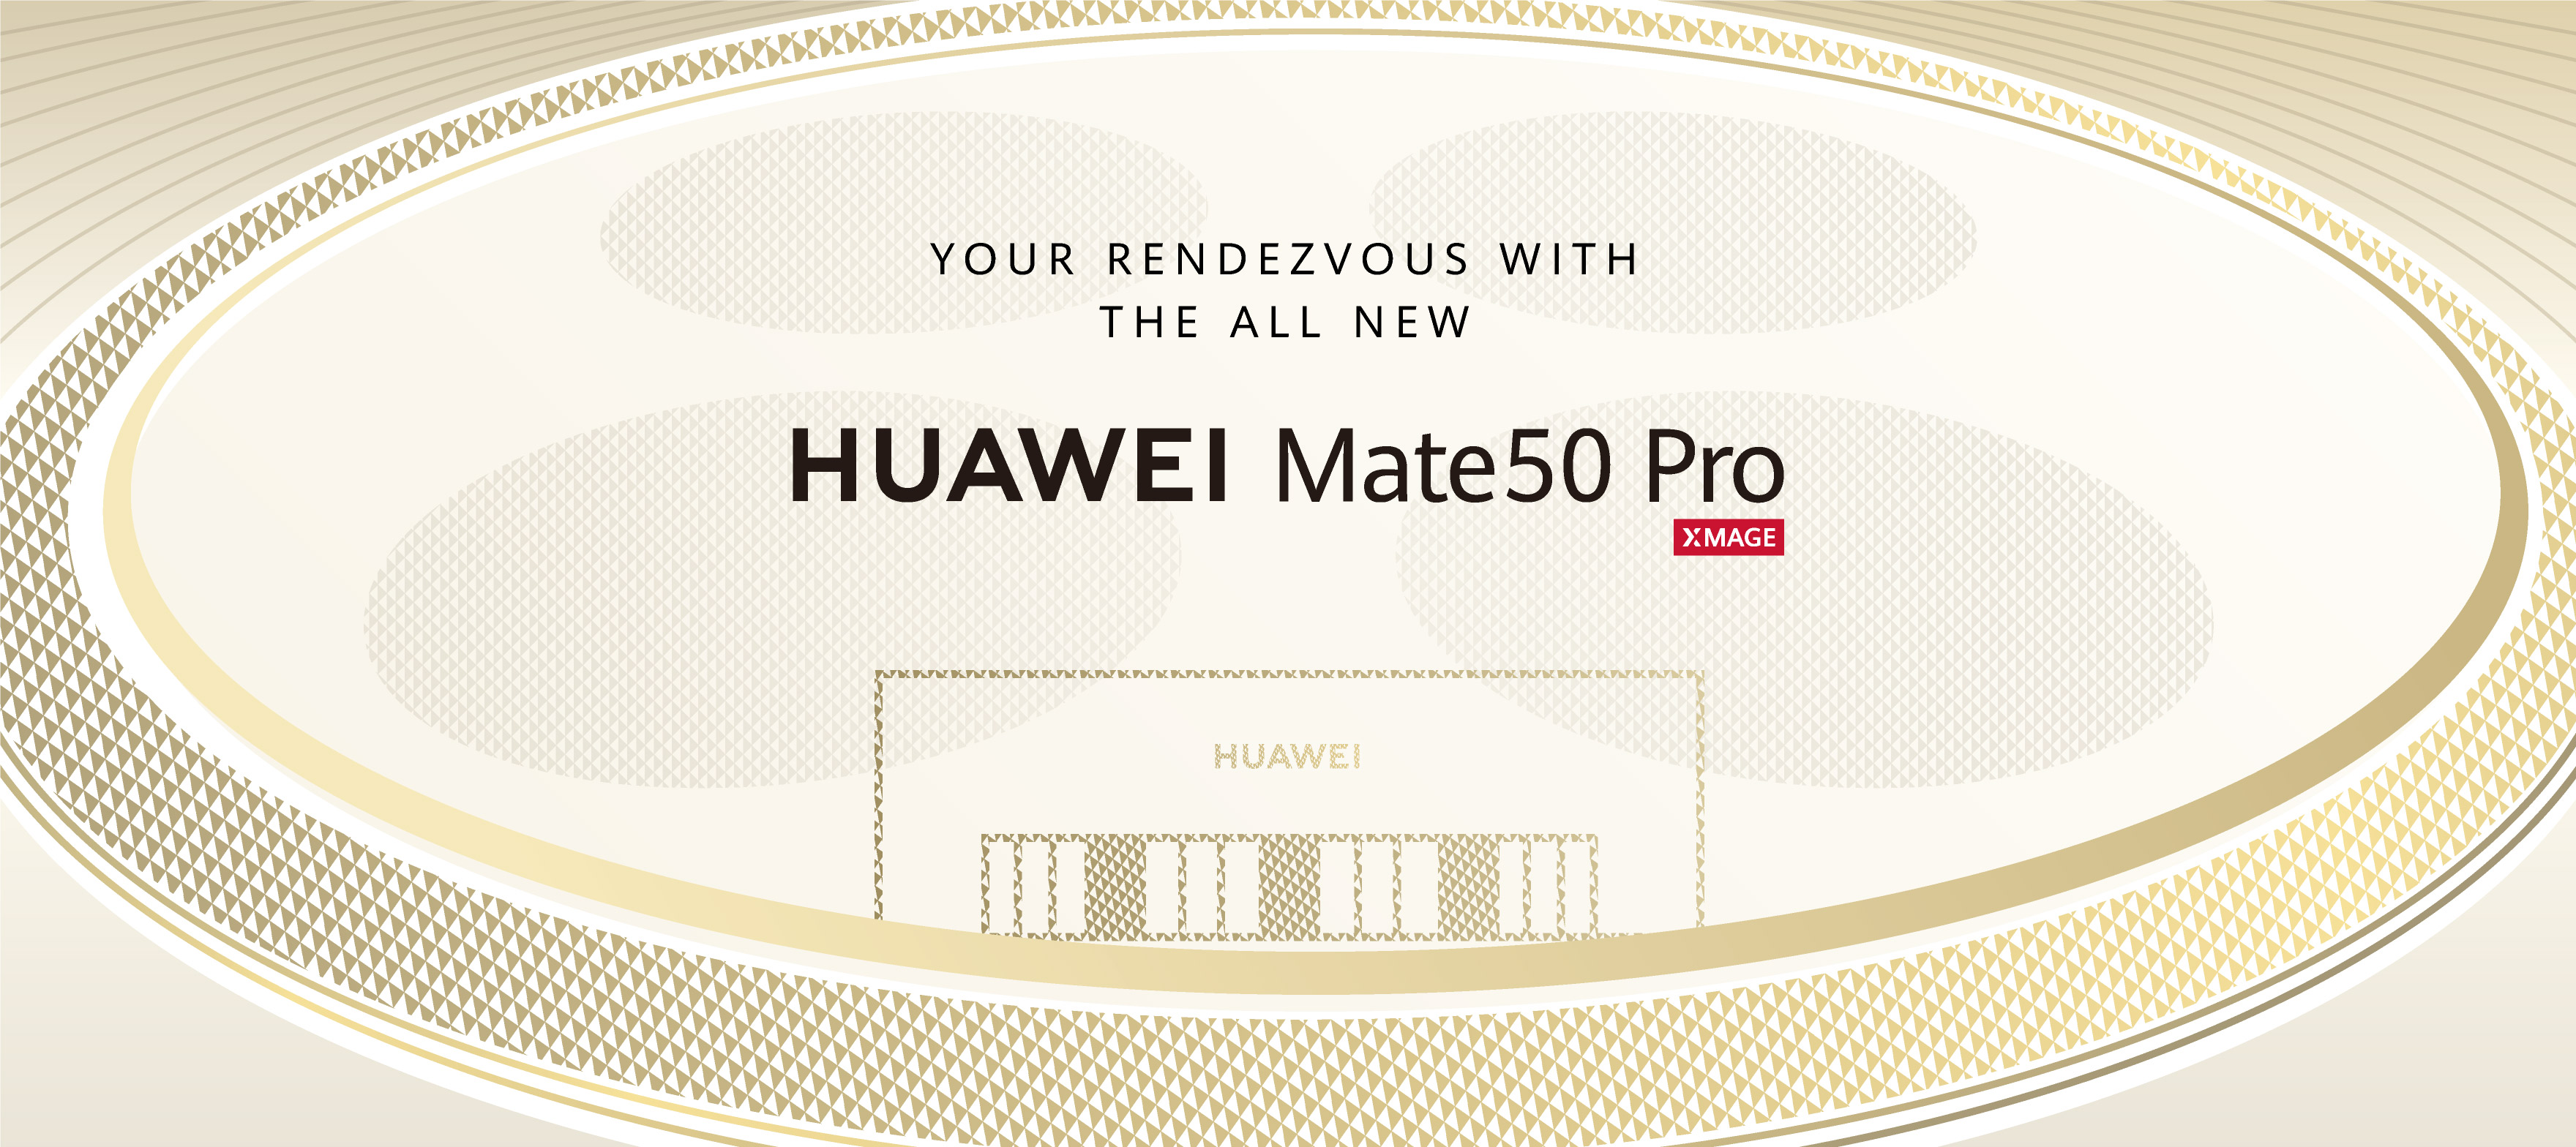 HUAWE Mate 50 Pro